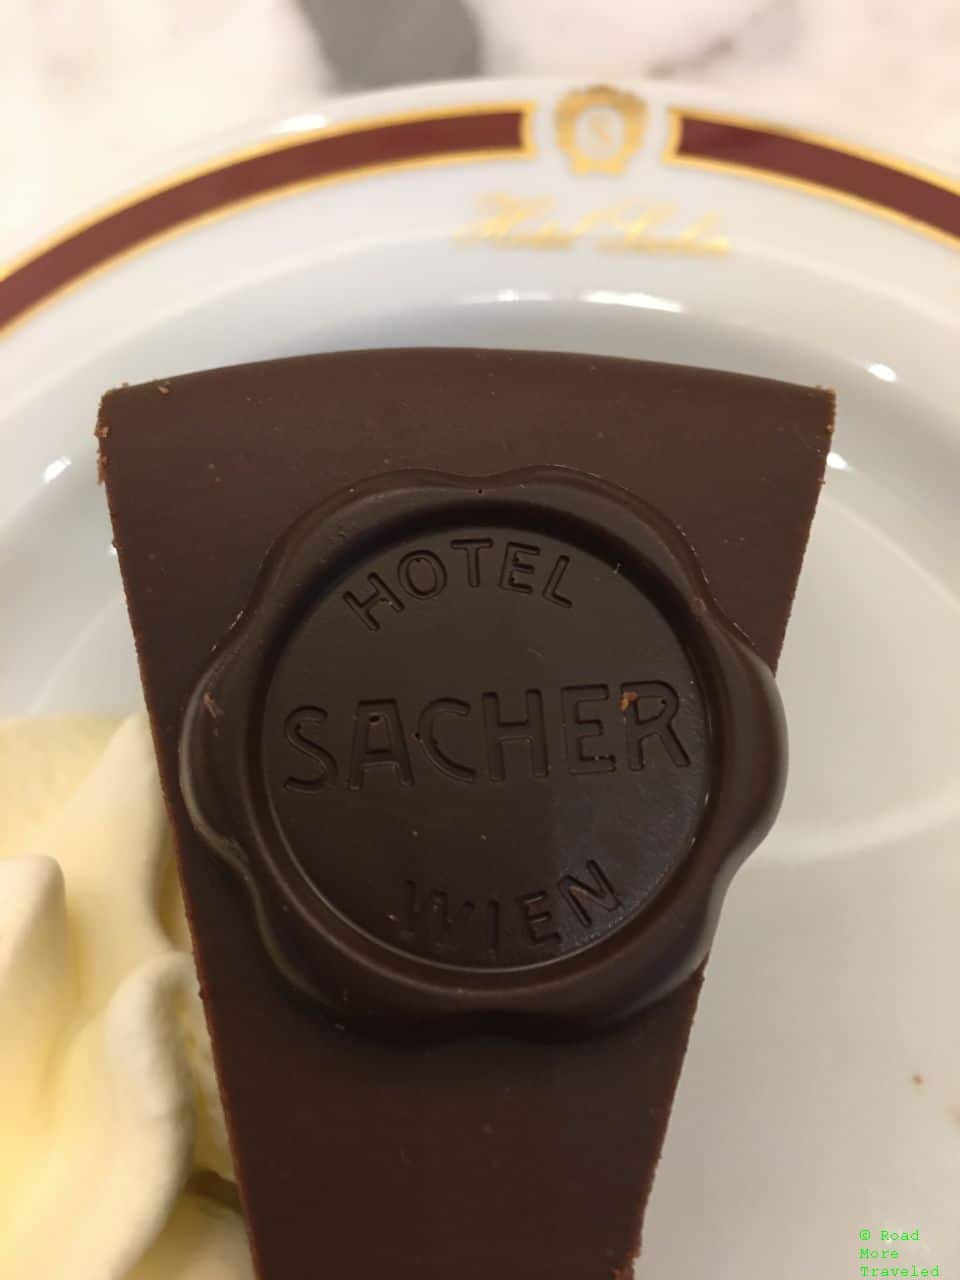 Sacher-Torte at Hotel Sacher Wien